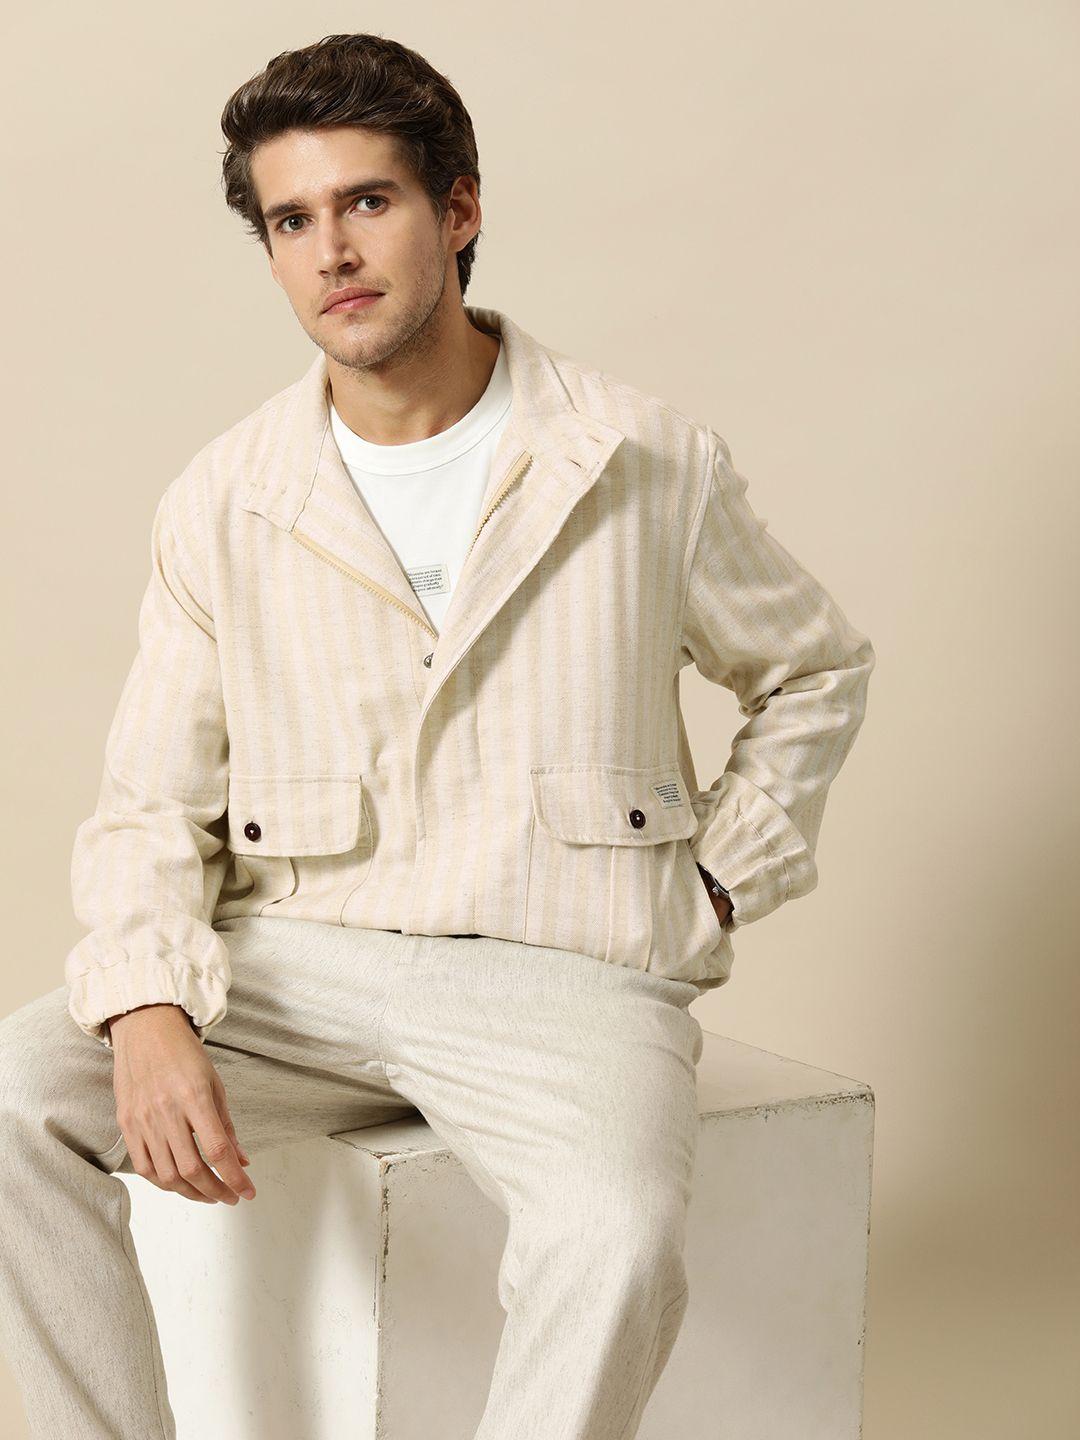 mr bowerbird men beige off white striped tailored jacket